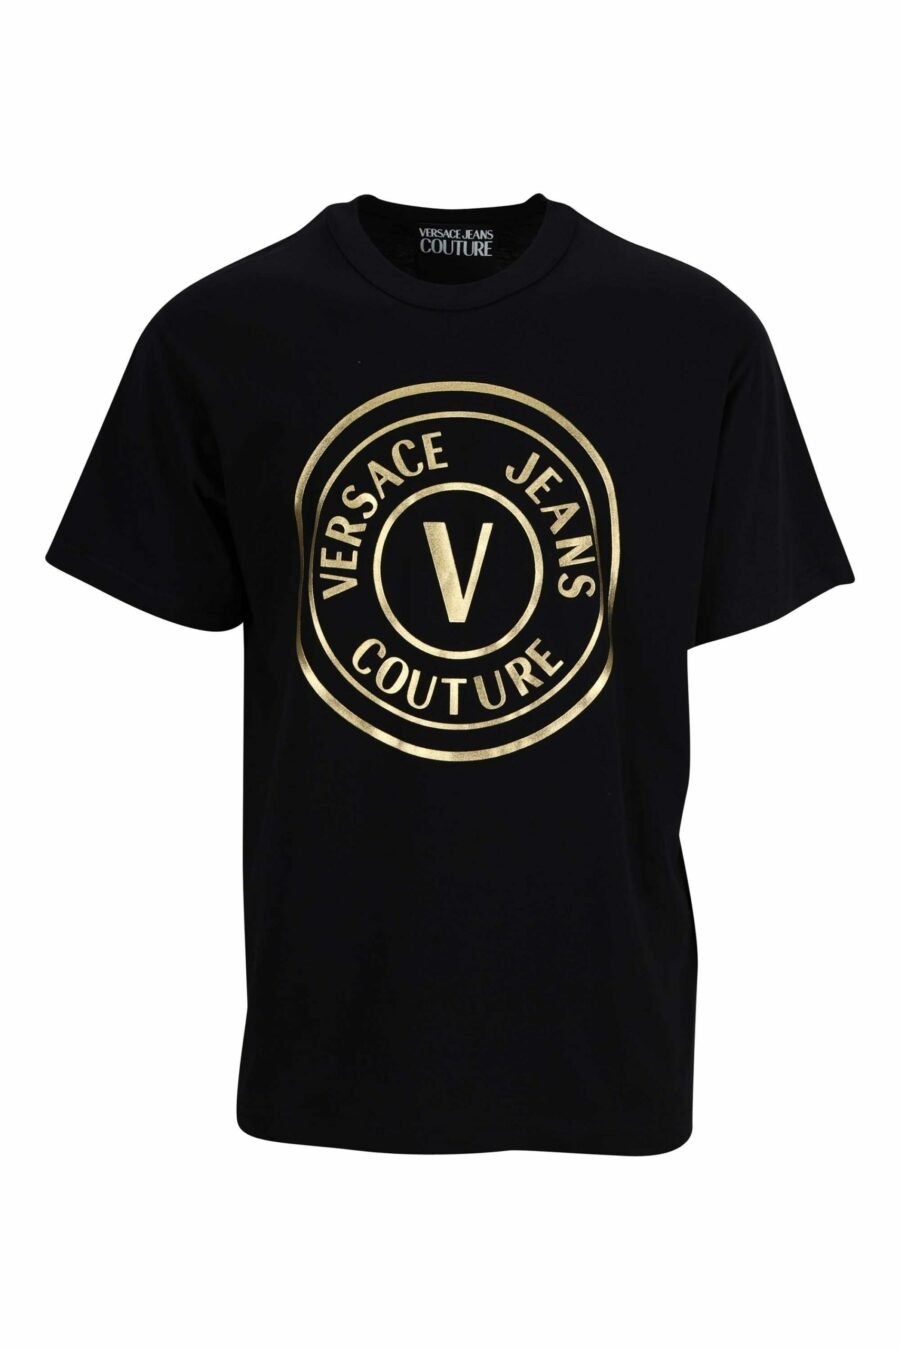 T-shirt noir avec "emblème" maxilogo circulaire doré - 8052019338058 scaled